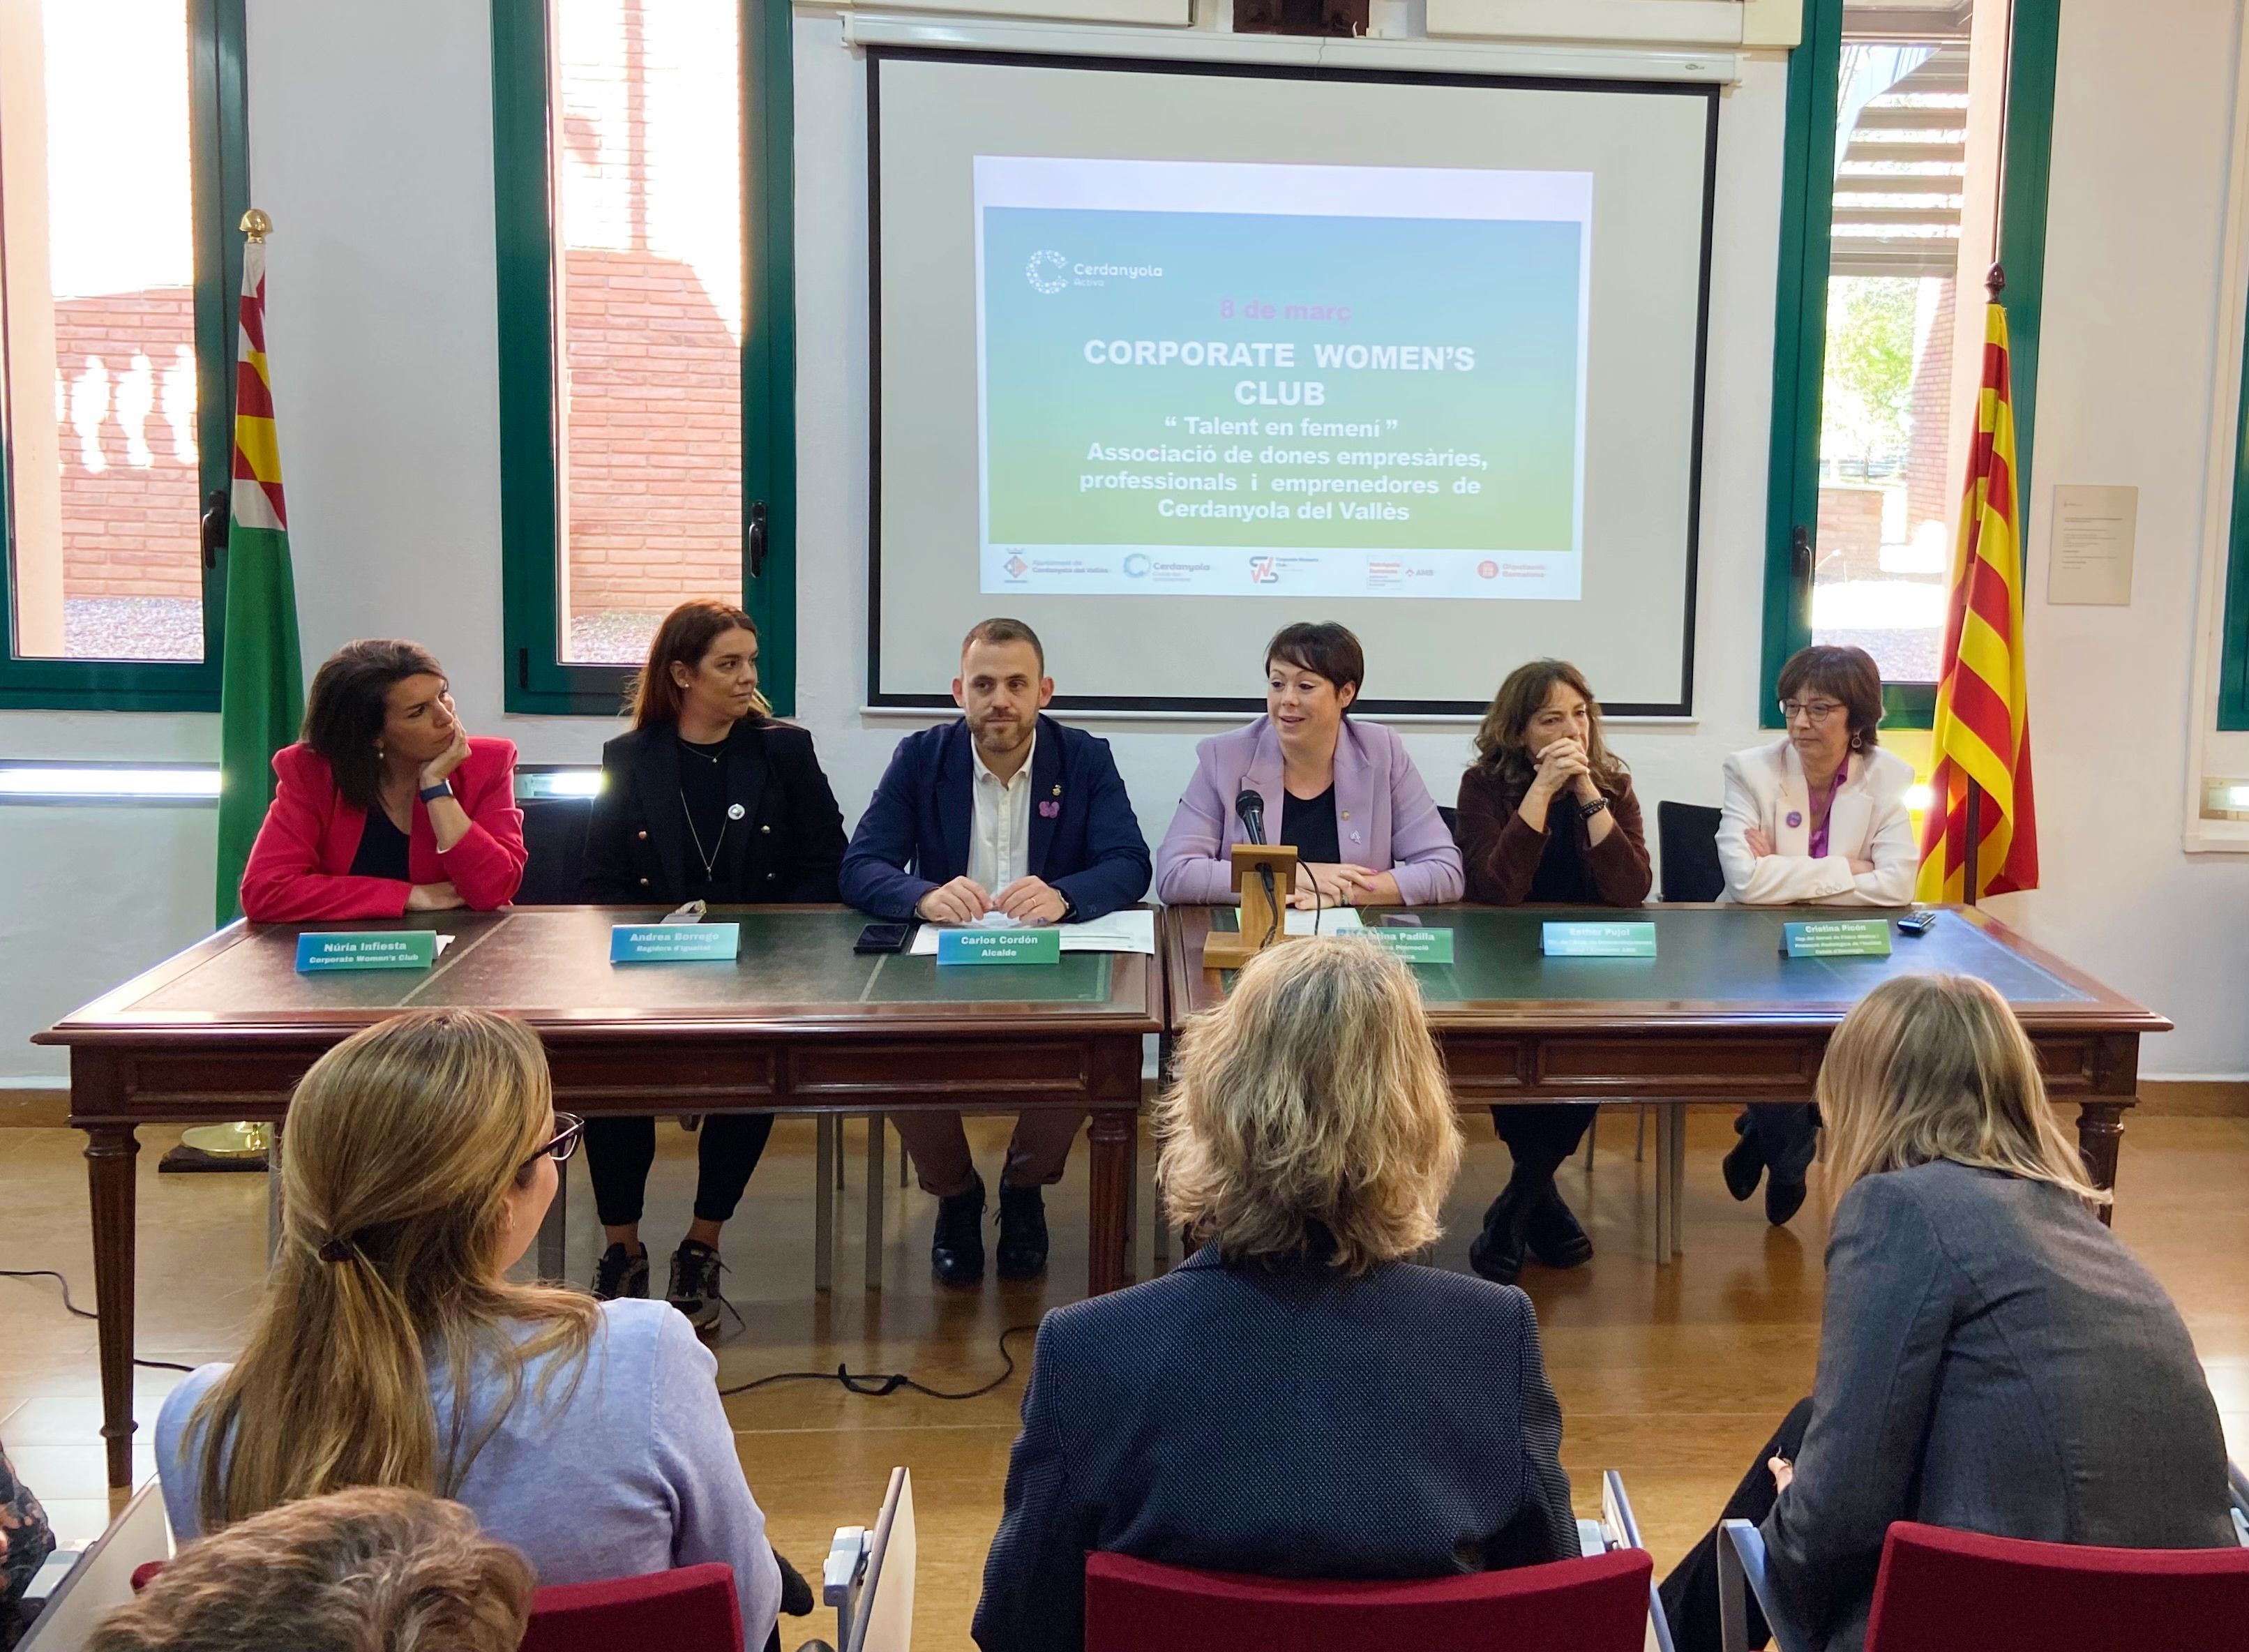 Presentació de l'associació Corporate Women's Club a la Masia Can Serraparera. FOTO: Nora MO